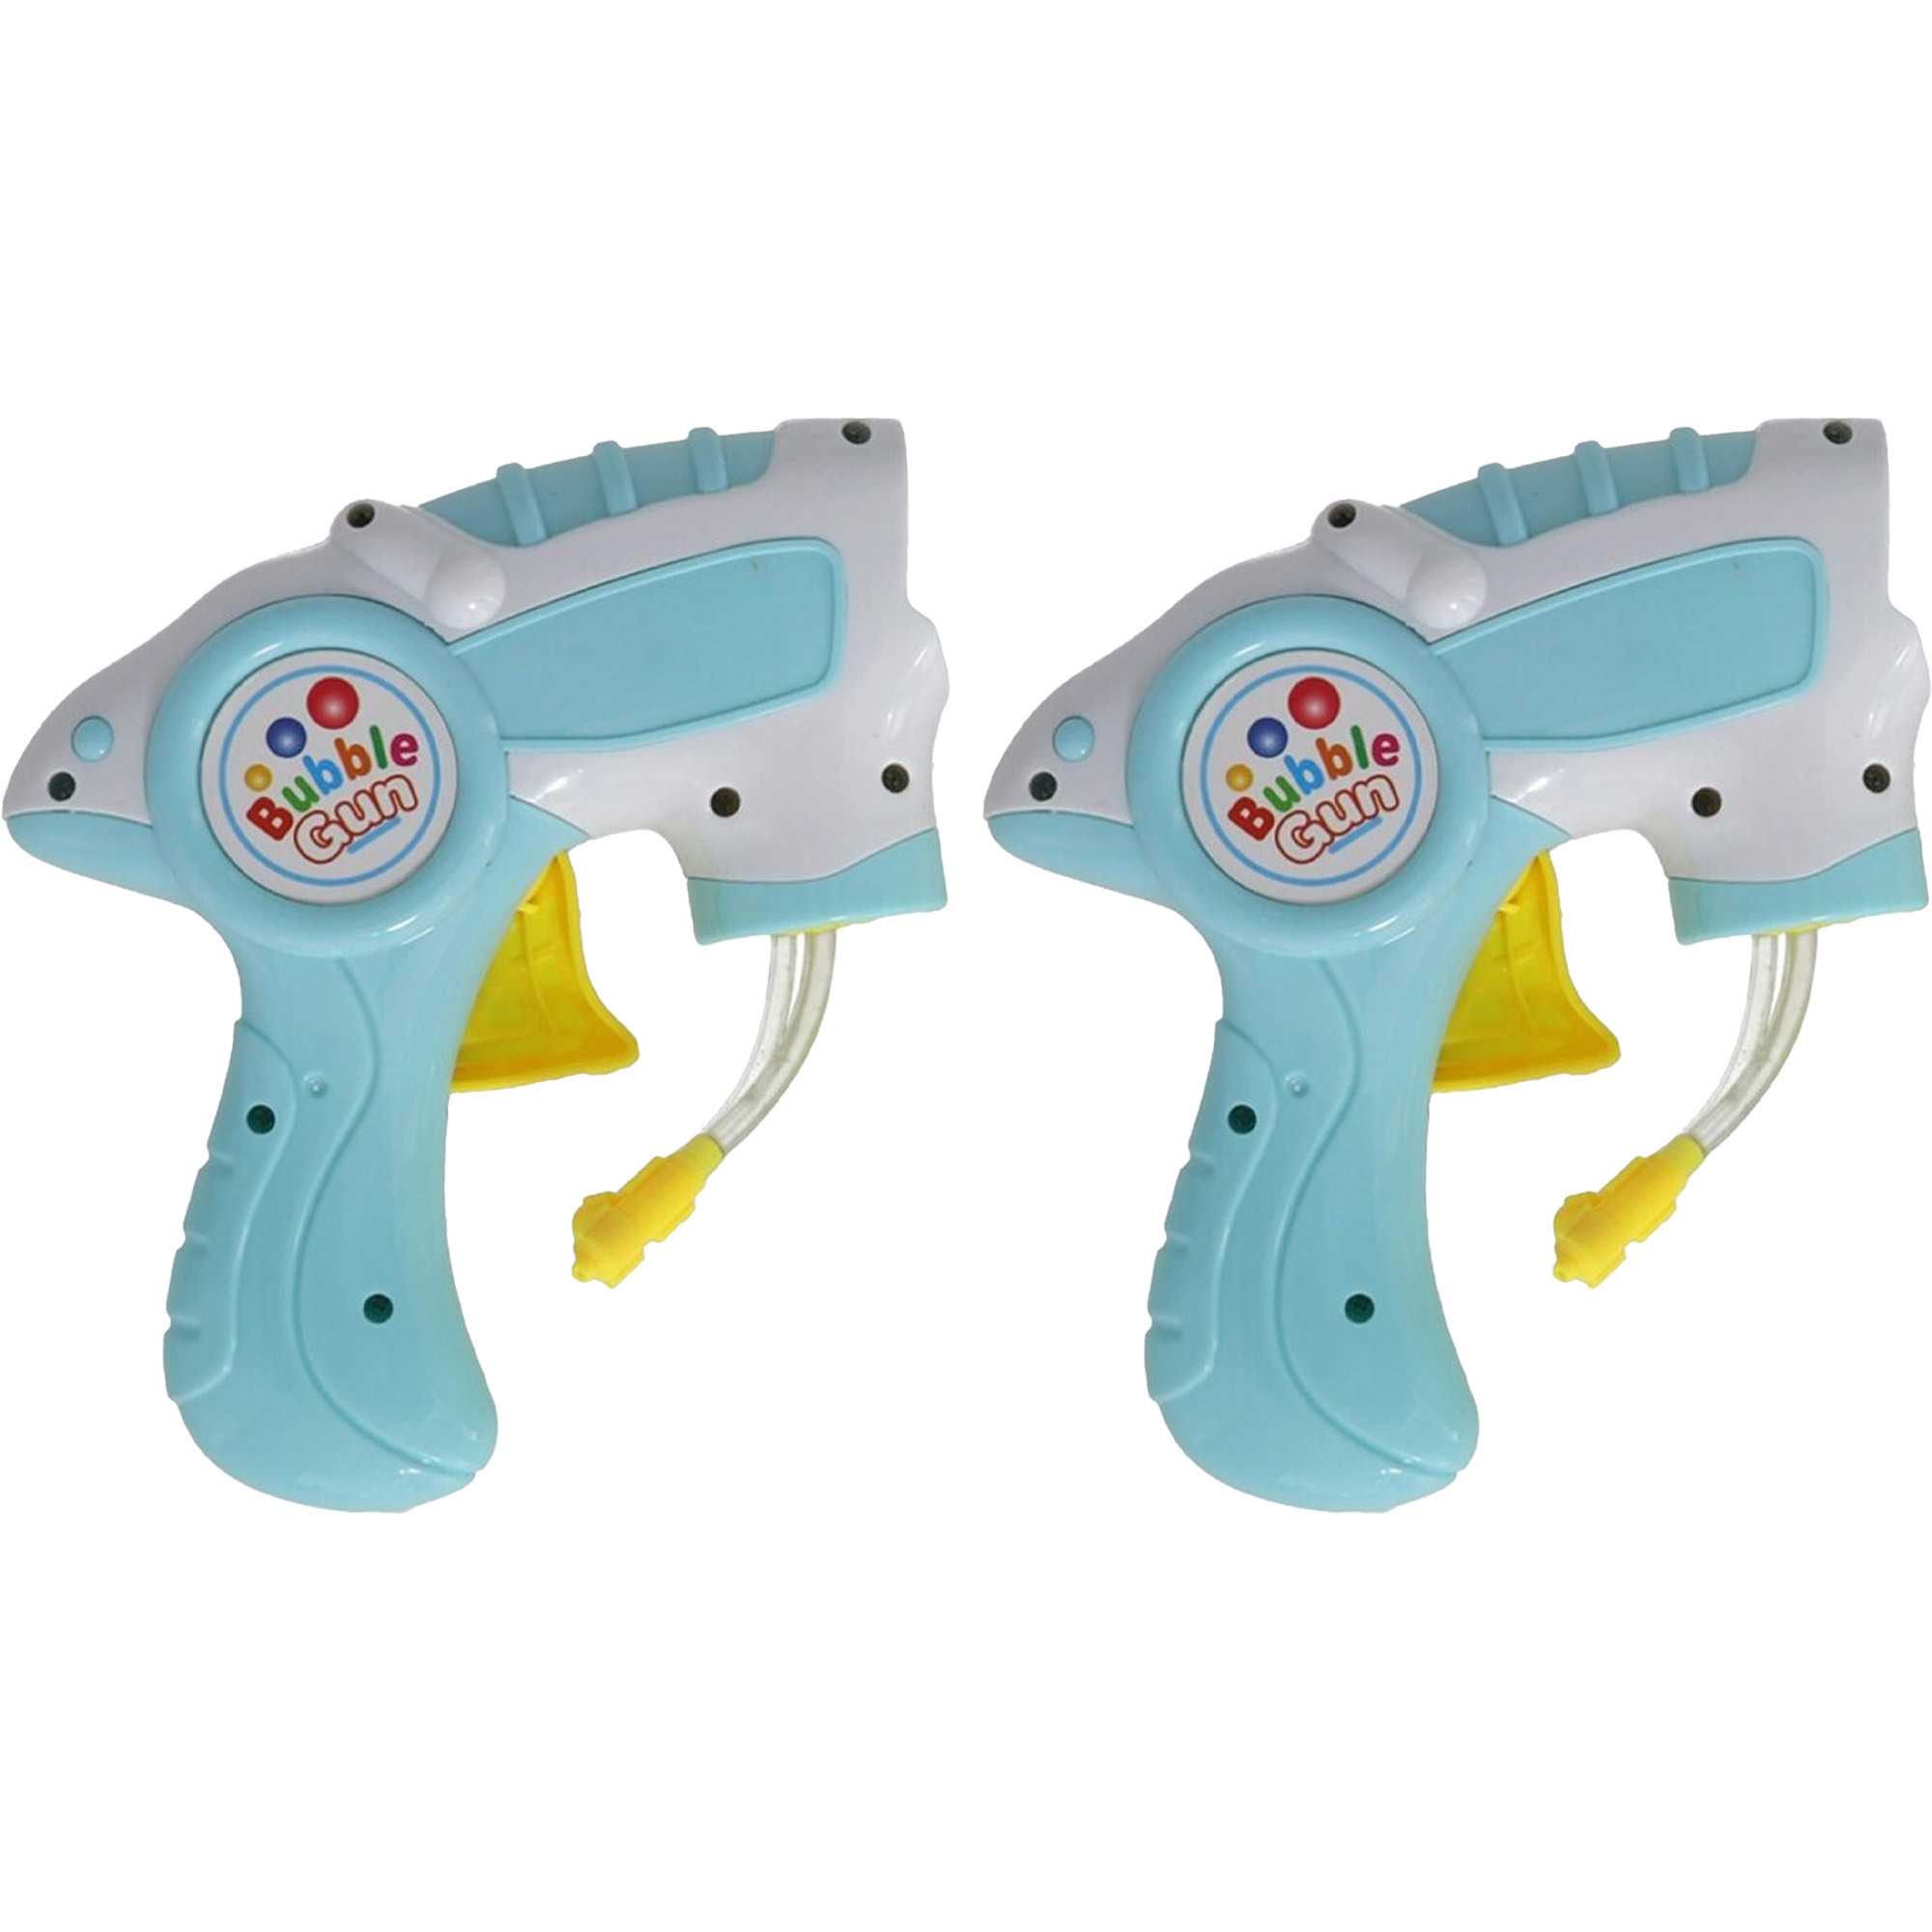 Bellenblaas speelgoed pistool - 2x - met vullingen - lichtblauw - 15 cm - plastic - bellen blazen